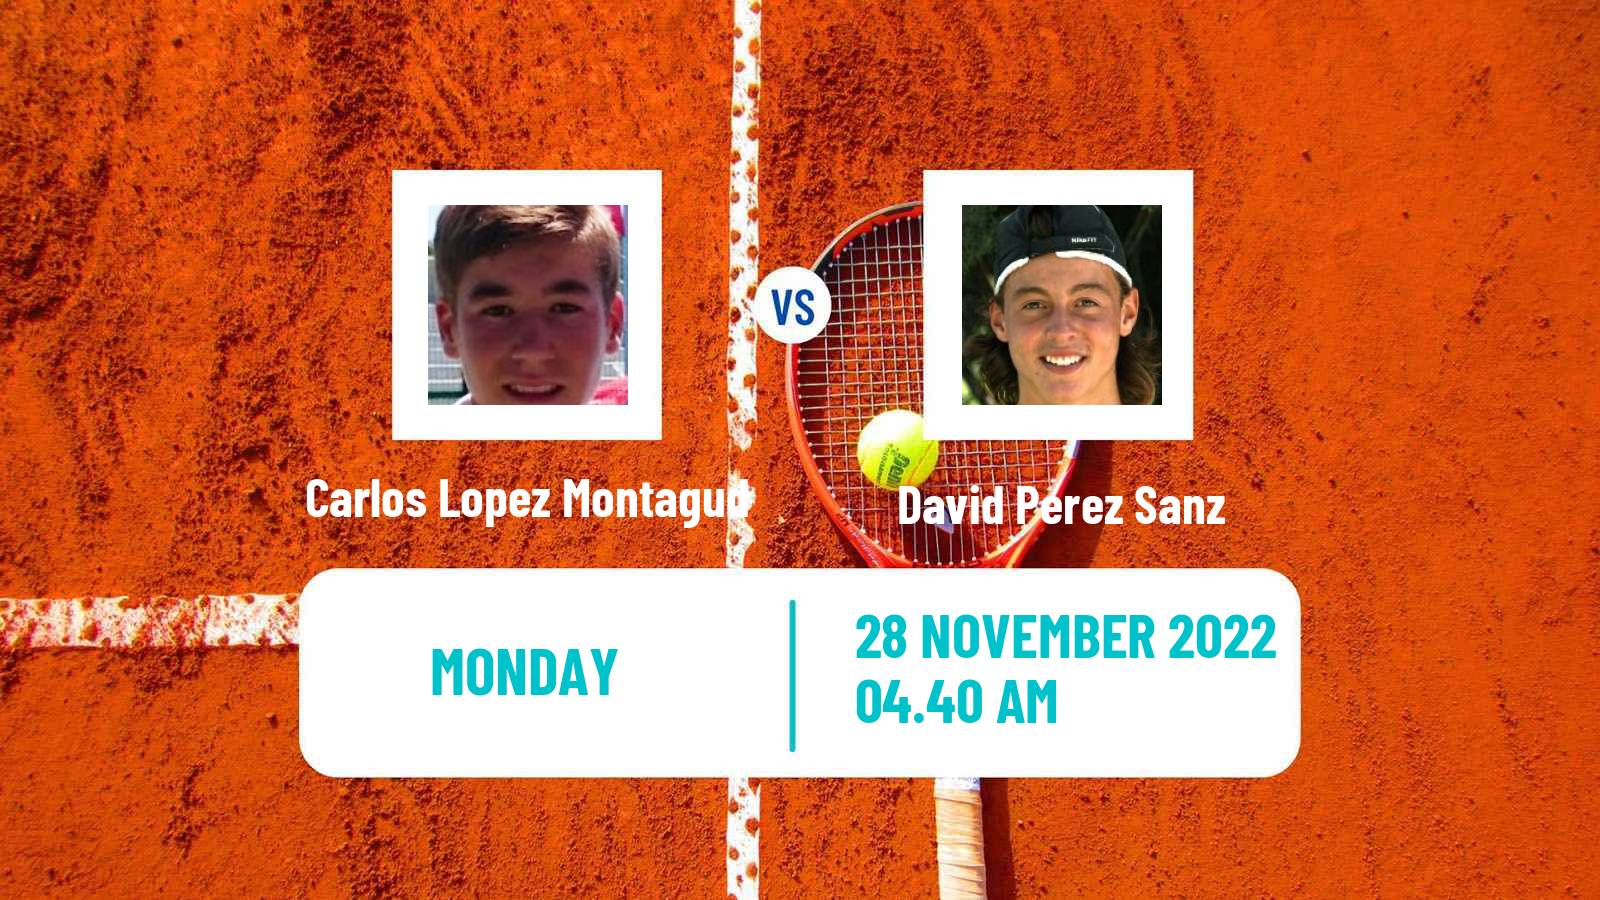 Tennis ATP Challenger Carlos Lopez Montagud - David Perez Sanz